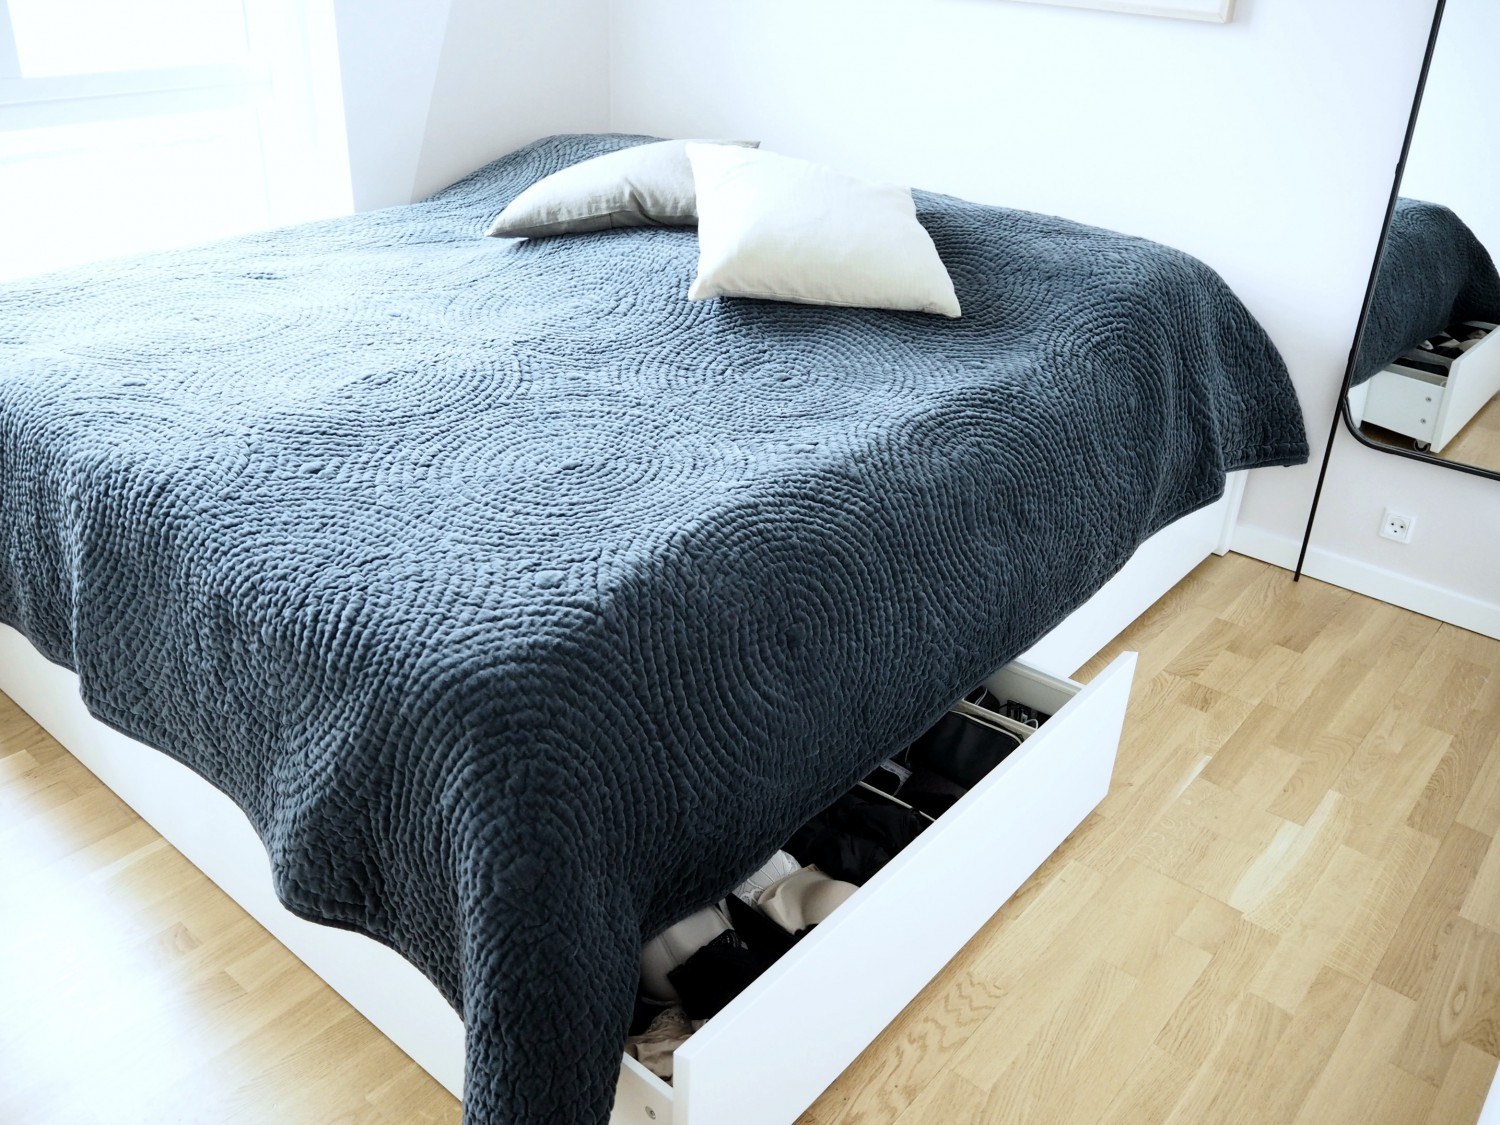 Manøvre At placere indbildskhed En pæn (og praktisk) DIY seng. Yes, det findes! – Danica Chloe